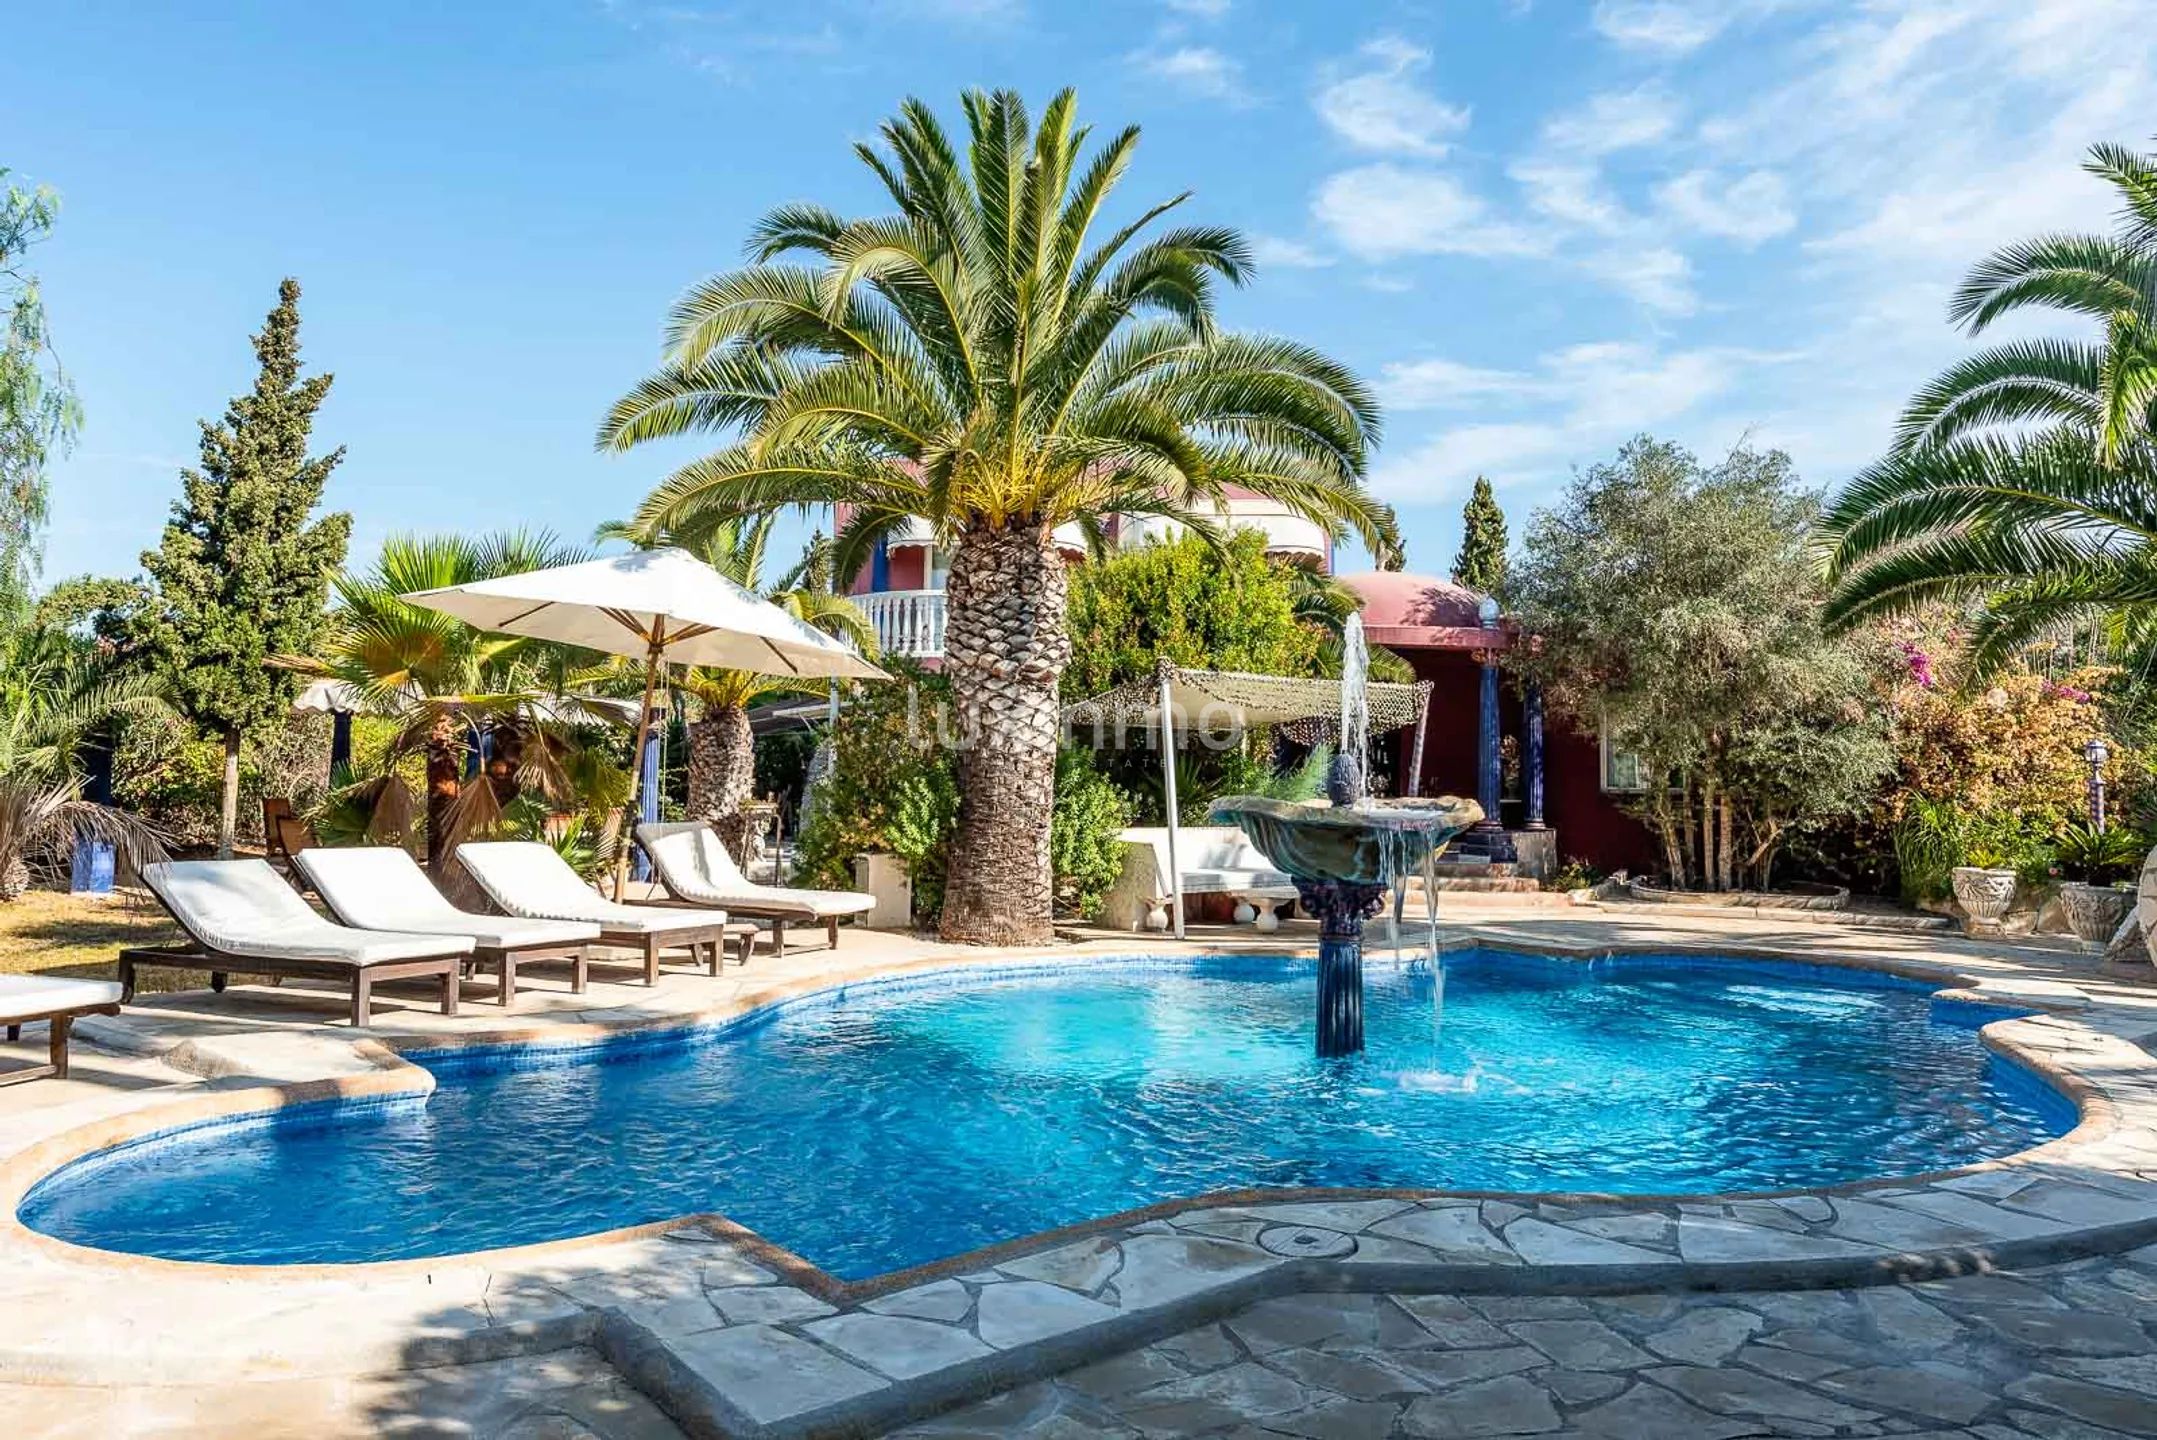 Villa Aladin: Autentisk arabisk-inspirert villa med tropisk hage i Sant Jordi, Ibiza